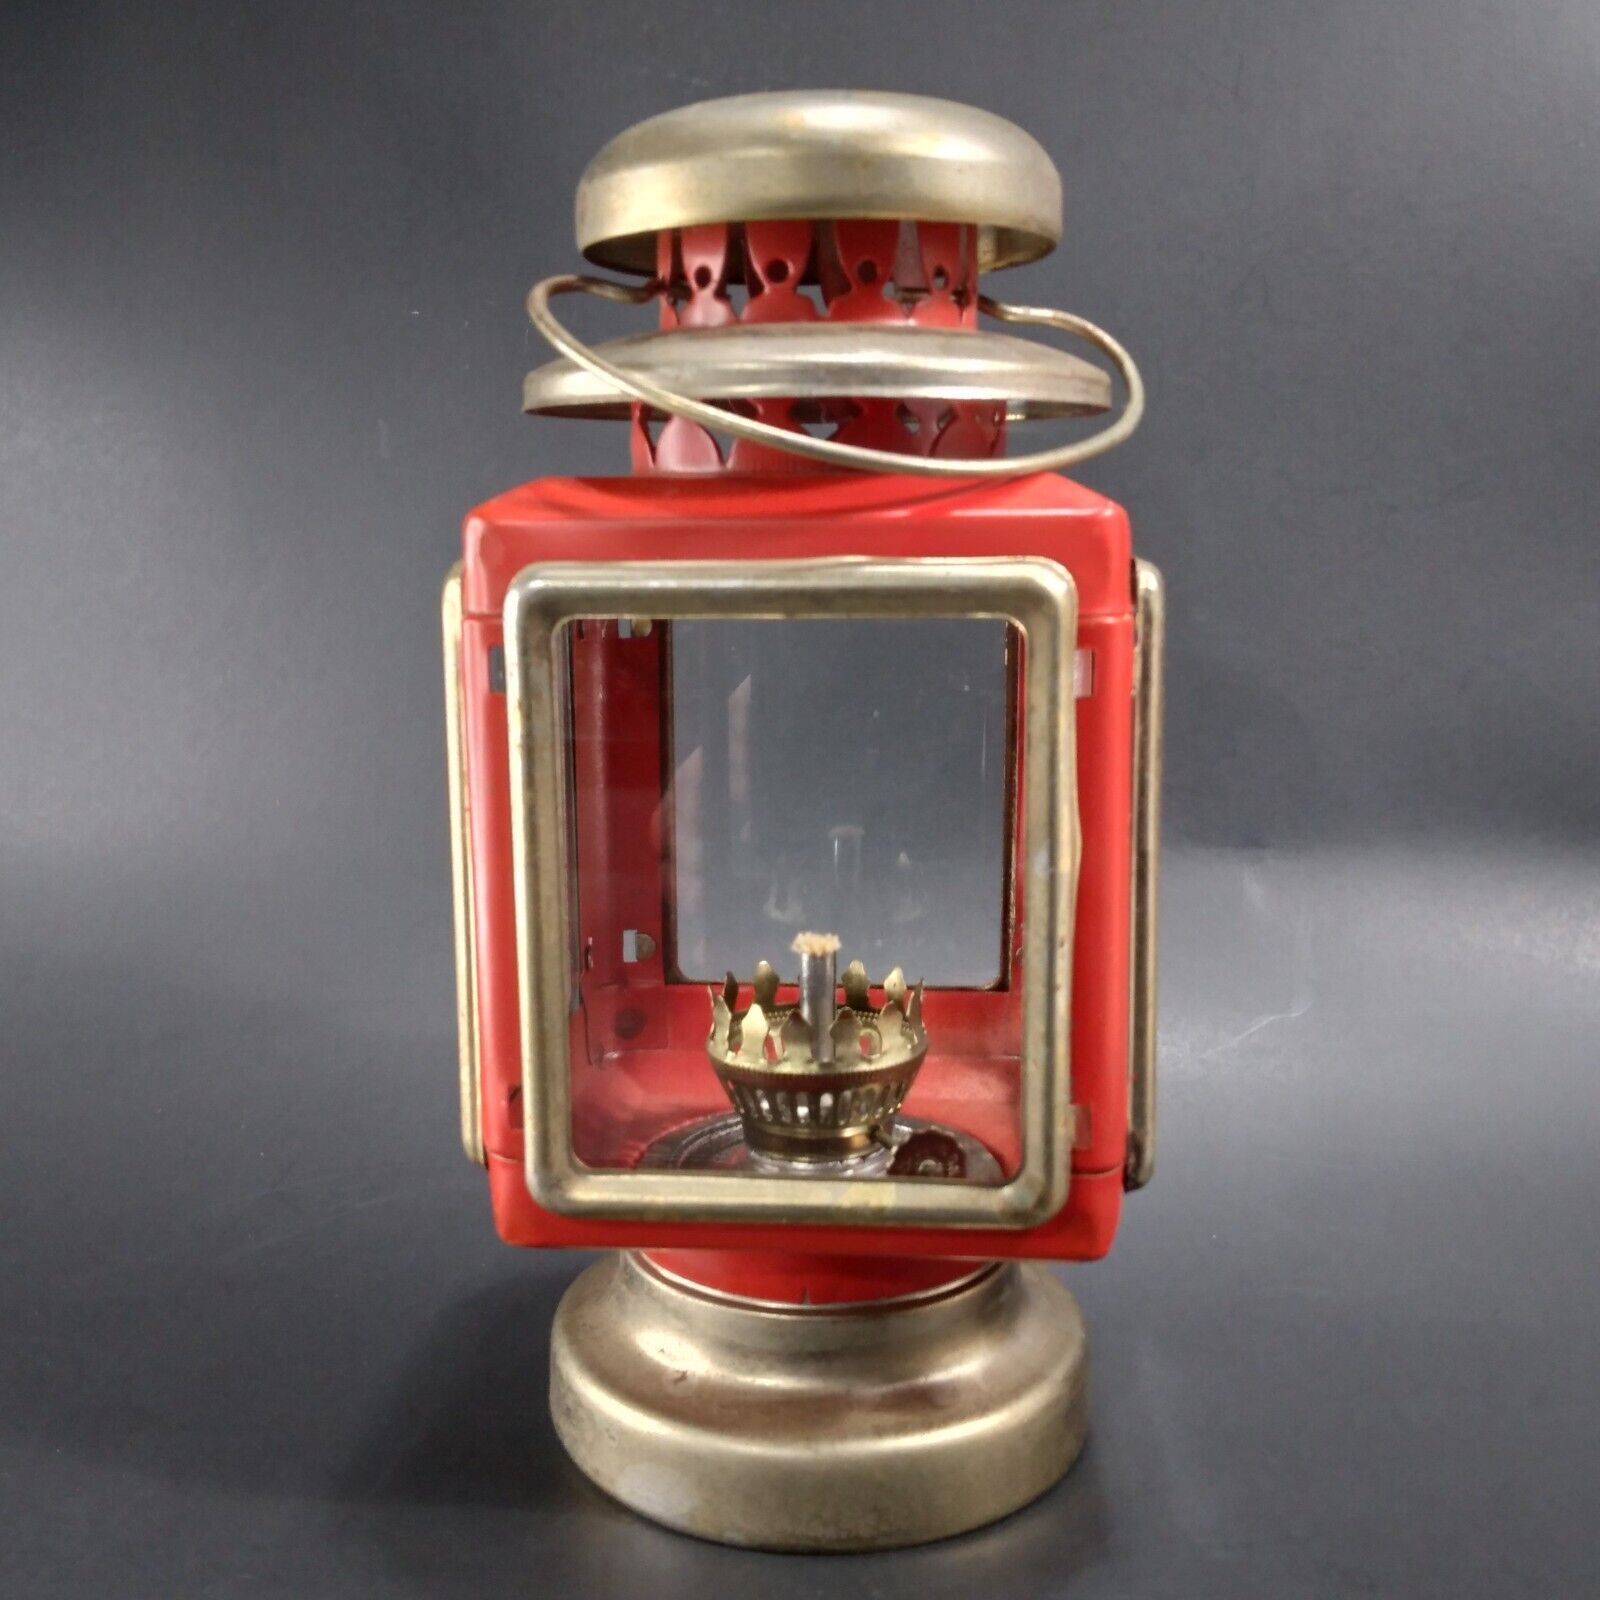 Red & Gold Tone Colonial Coach Hurricane Lantern Kerosene Lamp Vintage Hong Kong